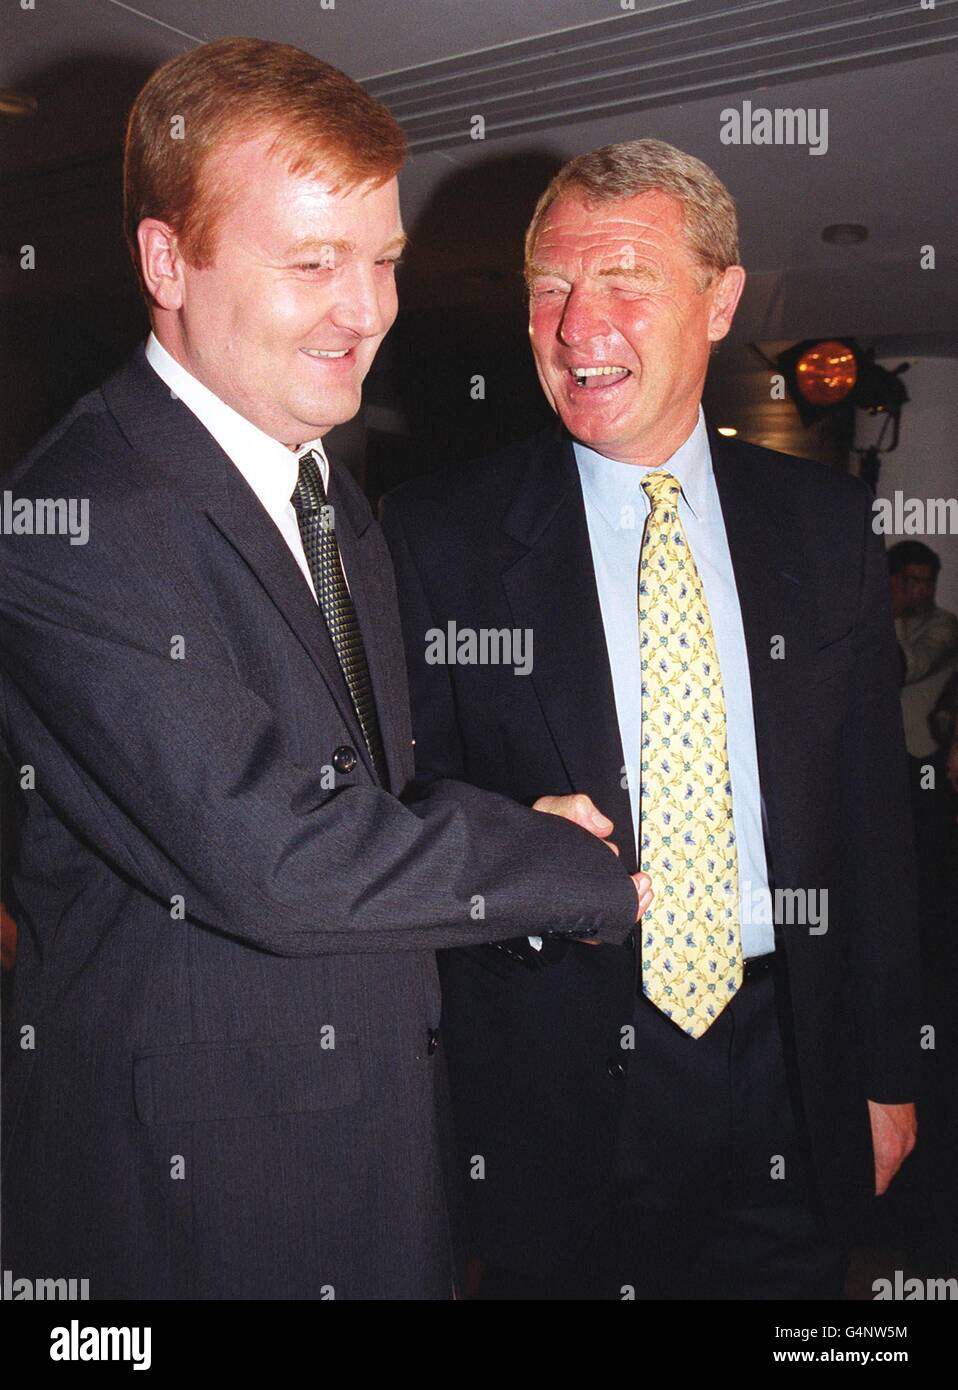 LE 9 AOÛT ' ce jour-là, en 1999, Charles Kennedy a succédé à Paddy Ashdown en tant que chef des libéraux-démocrates. L’ancien chef du parti libéral démocrate Paddy Ashdown félicite son successeur, Charles Kennedy (à gauche), qui a été élu à ce poste à Londres. Banque D'Images